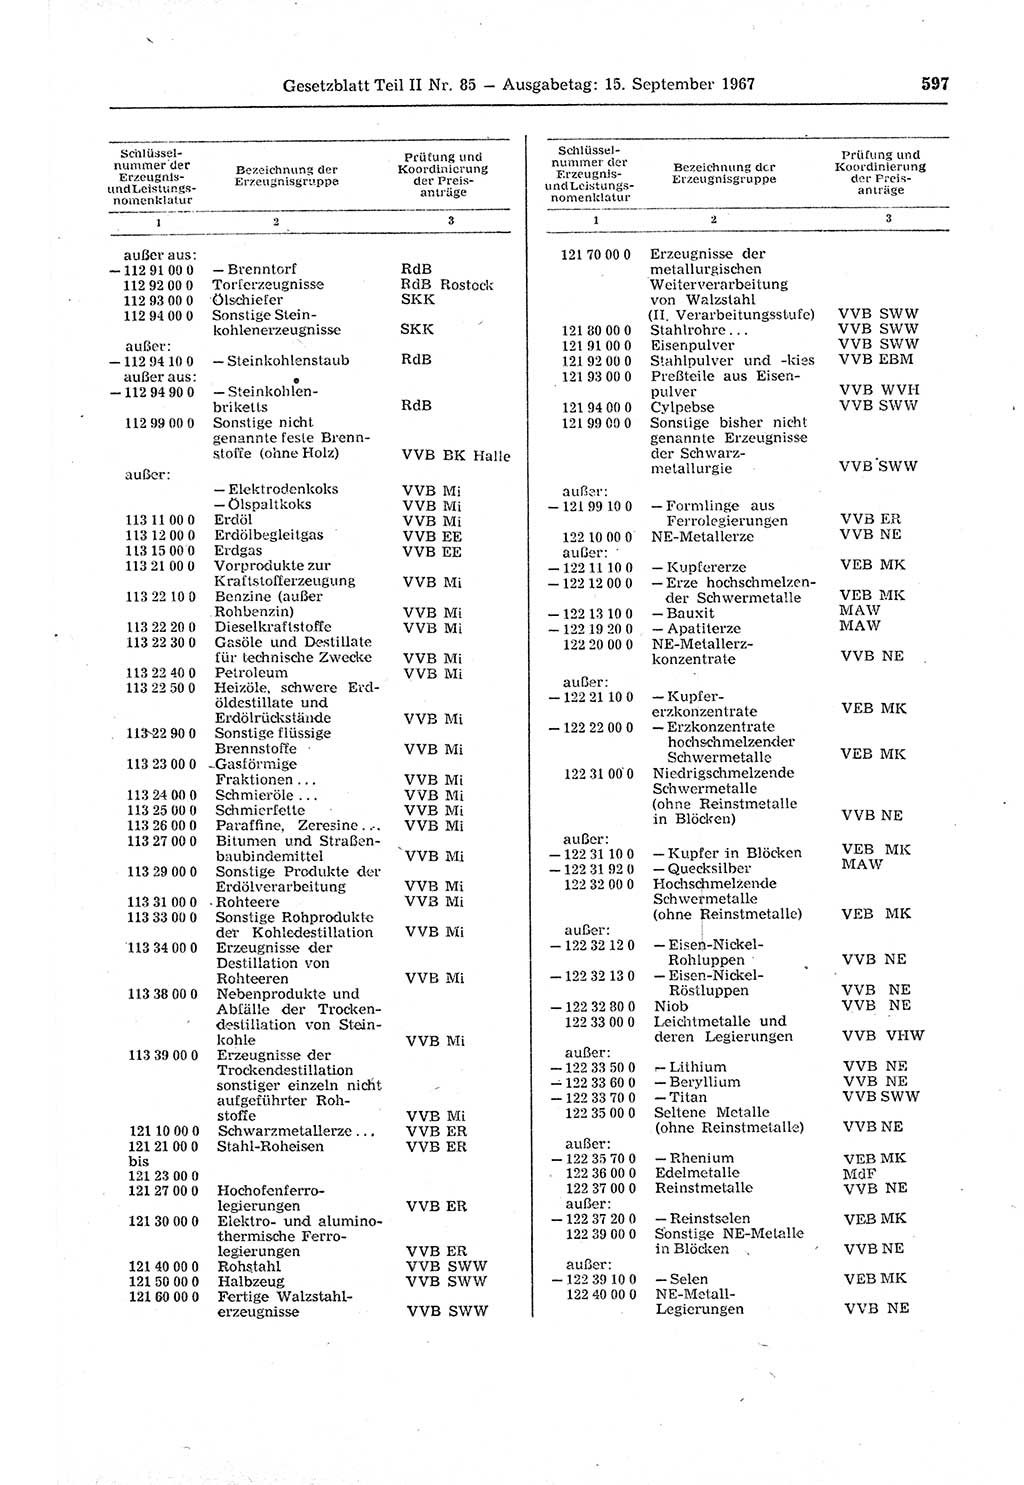 Gesetzblatt (GBl.) der Deutschen Demokratischen Republik (DDR) Teil ⅠⅠ 1967, Seite 597 (GBl. DDR ⅠⅠ 1967, S. 597)